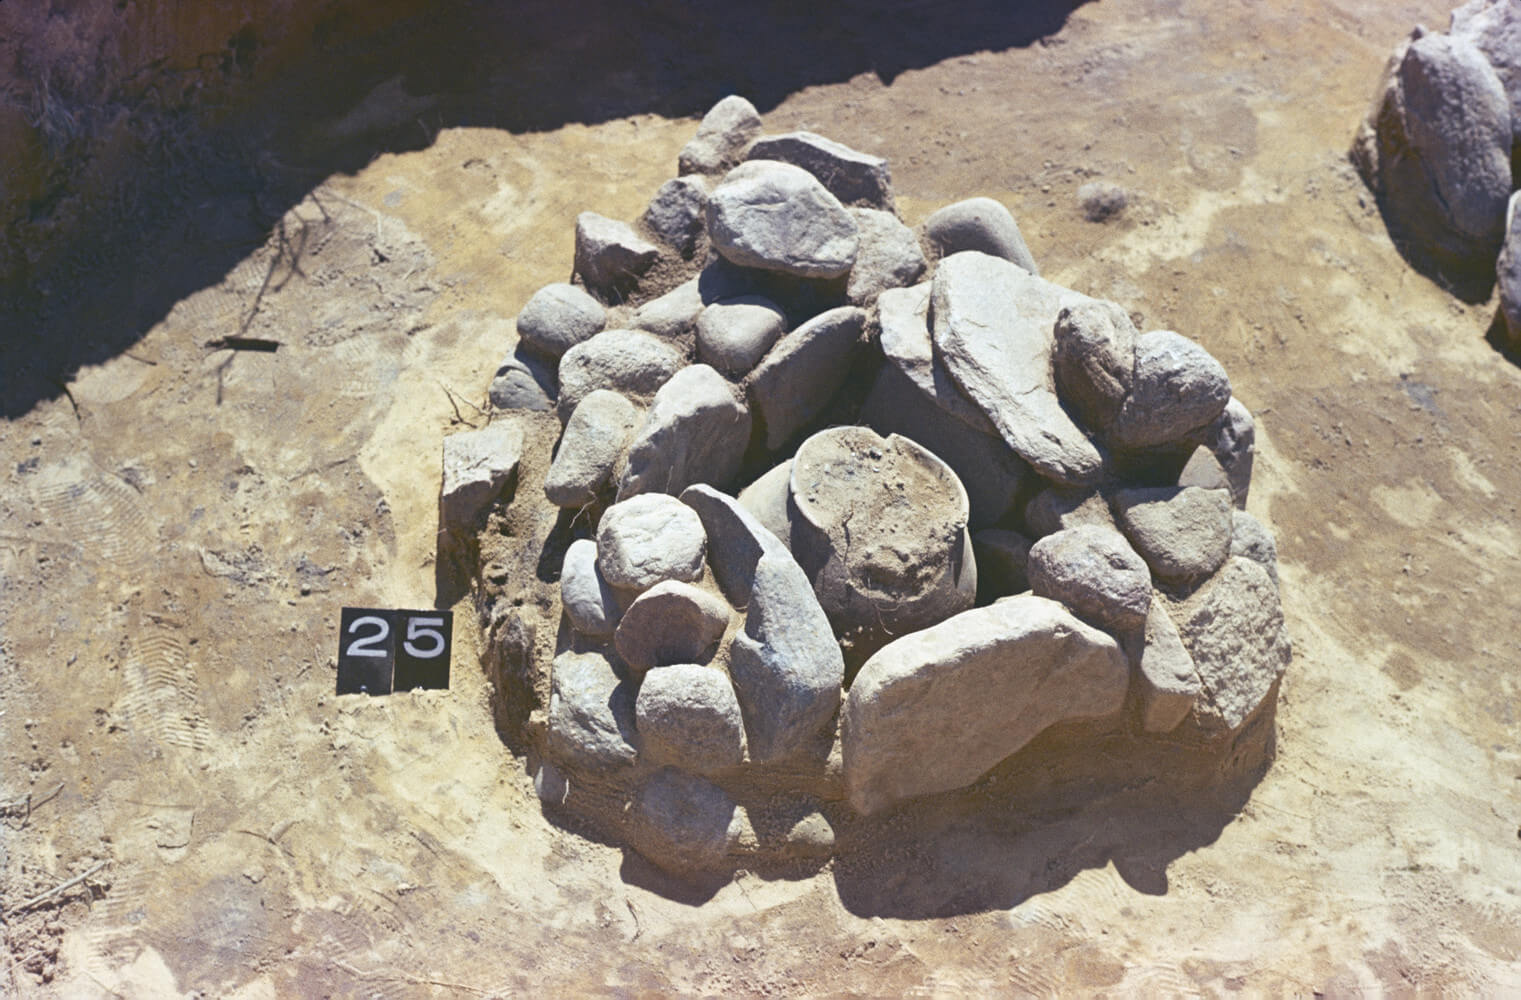 Zdjęcie z wykopalisk przedstawiające odkryty i oznaczony grób skrzynkowy, skłądający się z kamiennych płyt, które otaczają popielnicę.